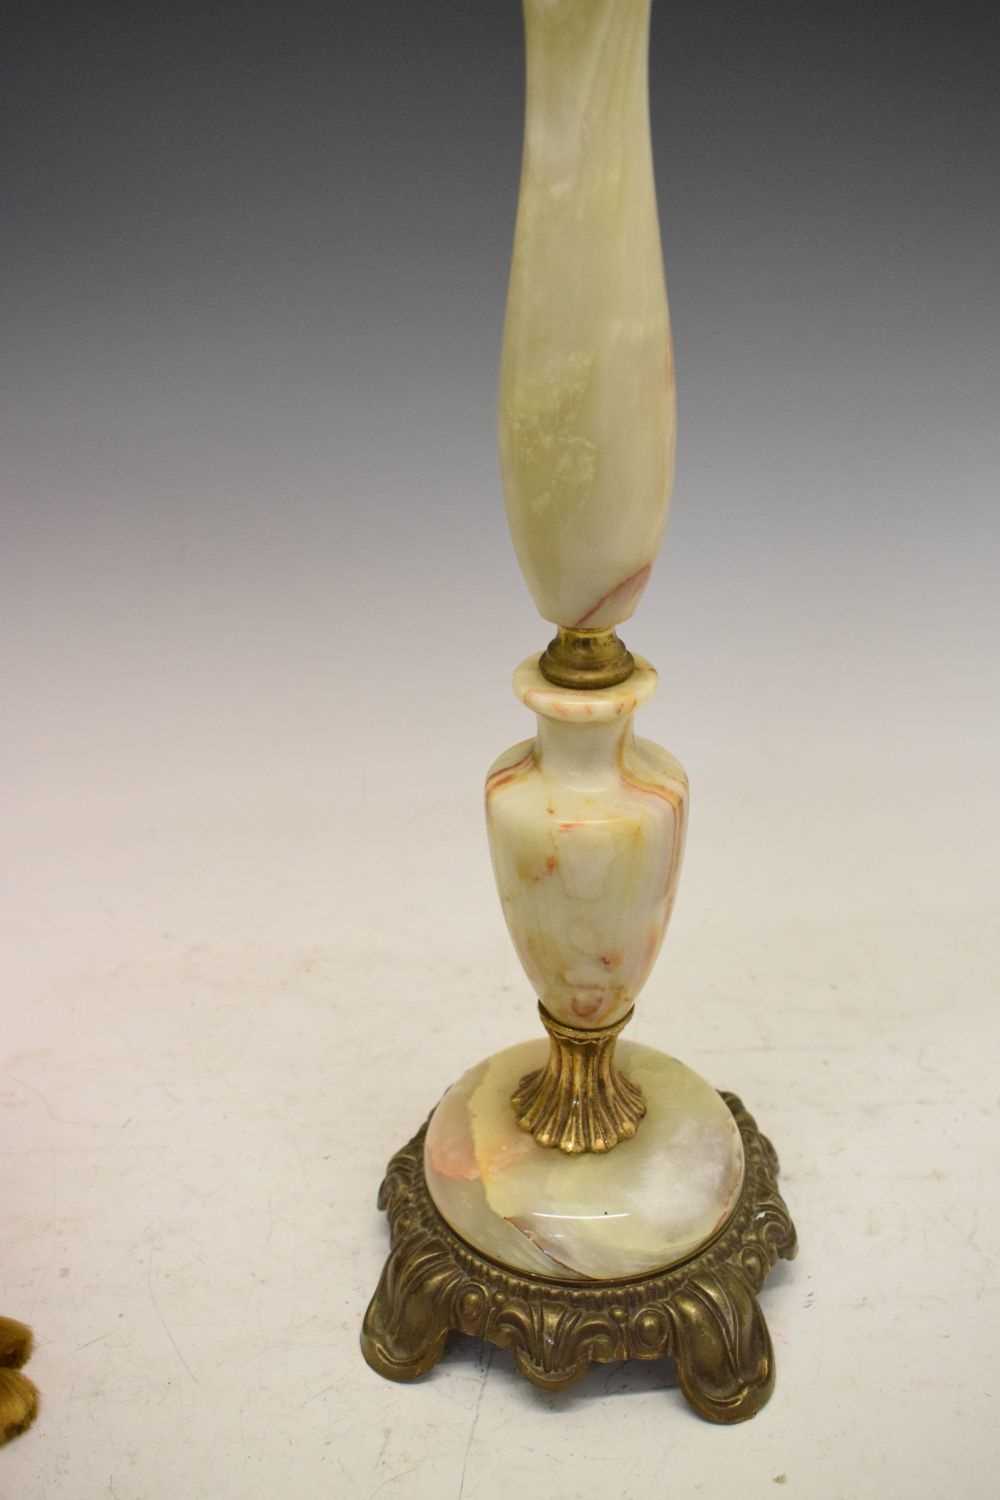 Onyx lamp base with shade - Image 5 of 6